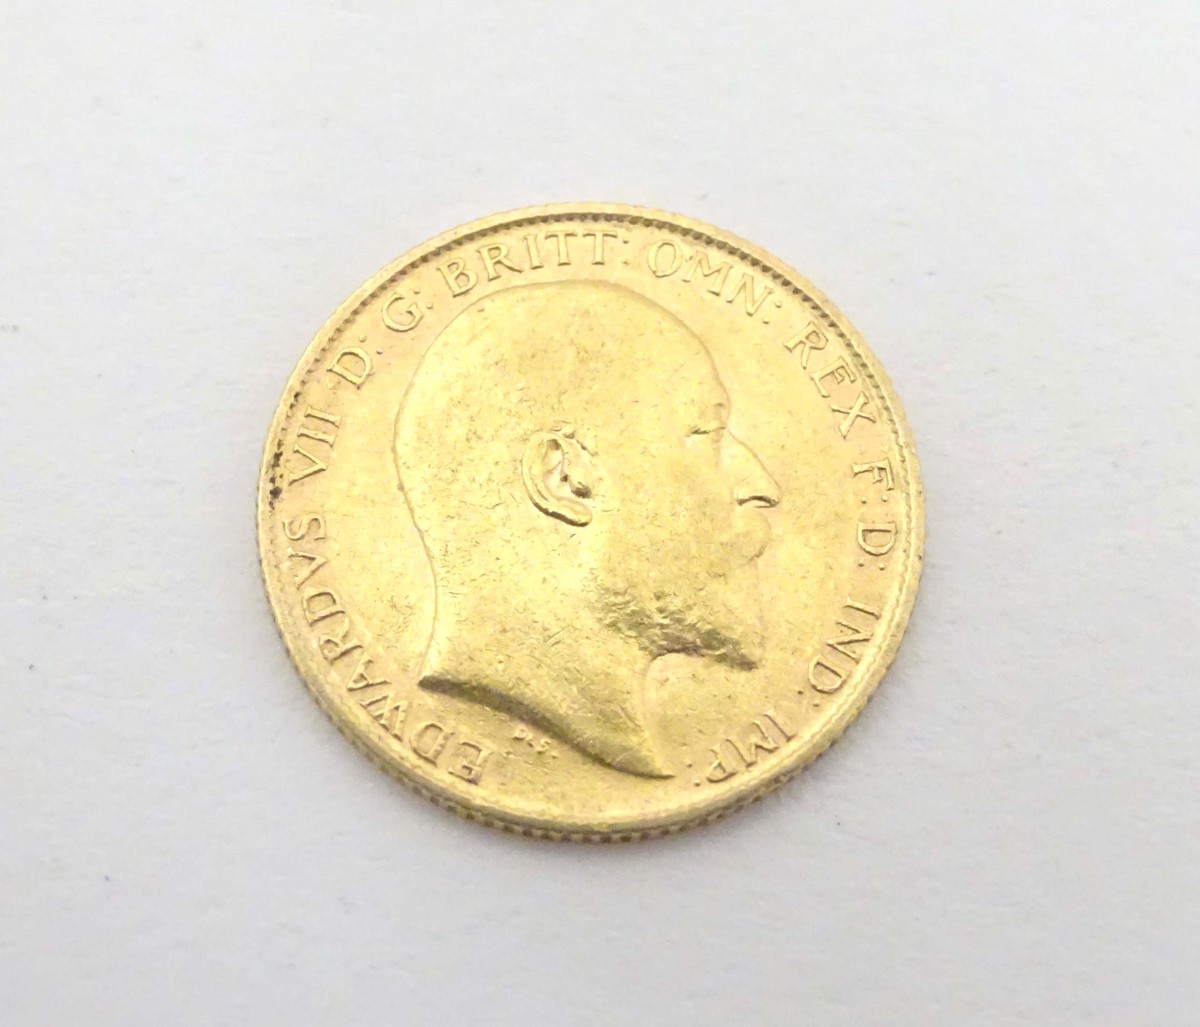 Coin : A King Edward VII 1907 gold half sovereign,